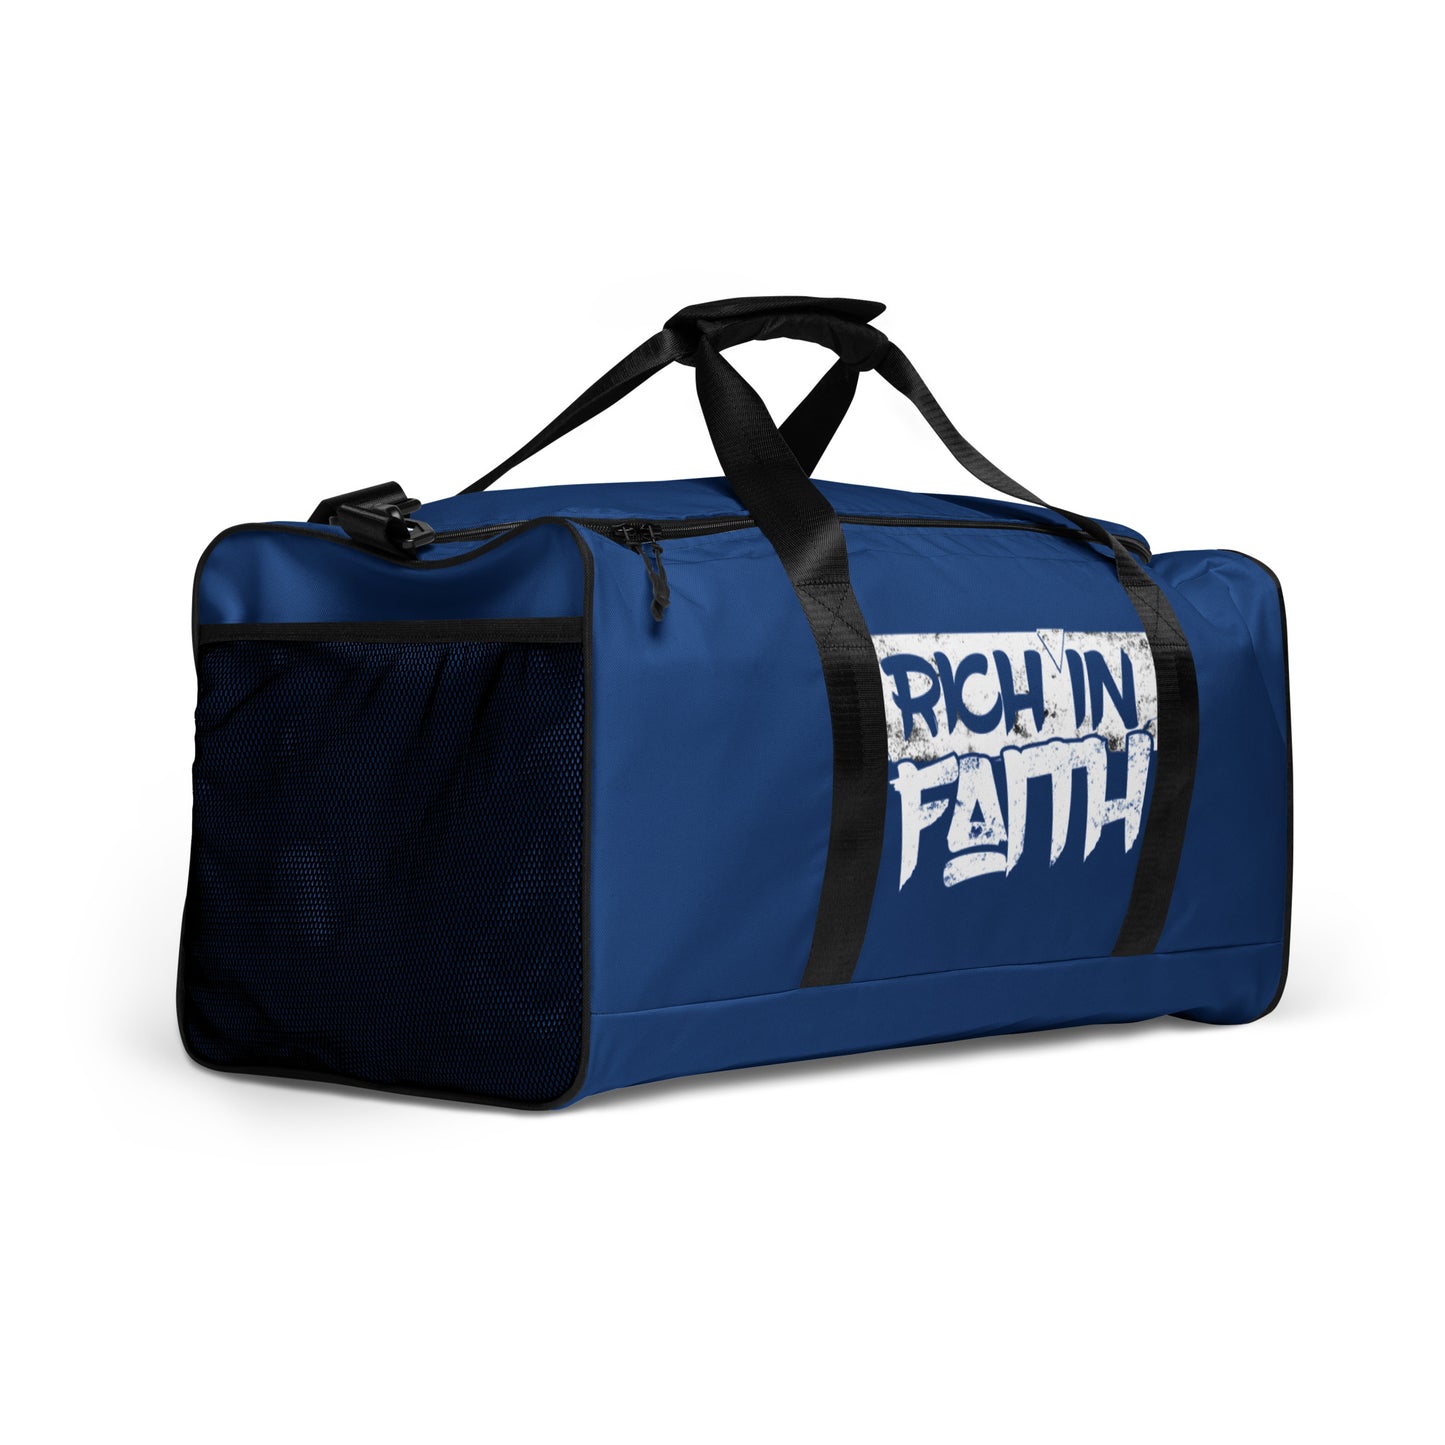 Rich in Faith Duffle bag | Blue - IGOTUS